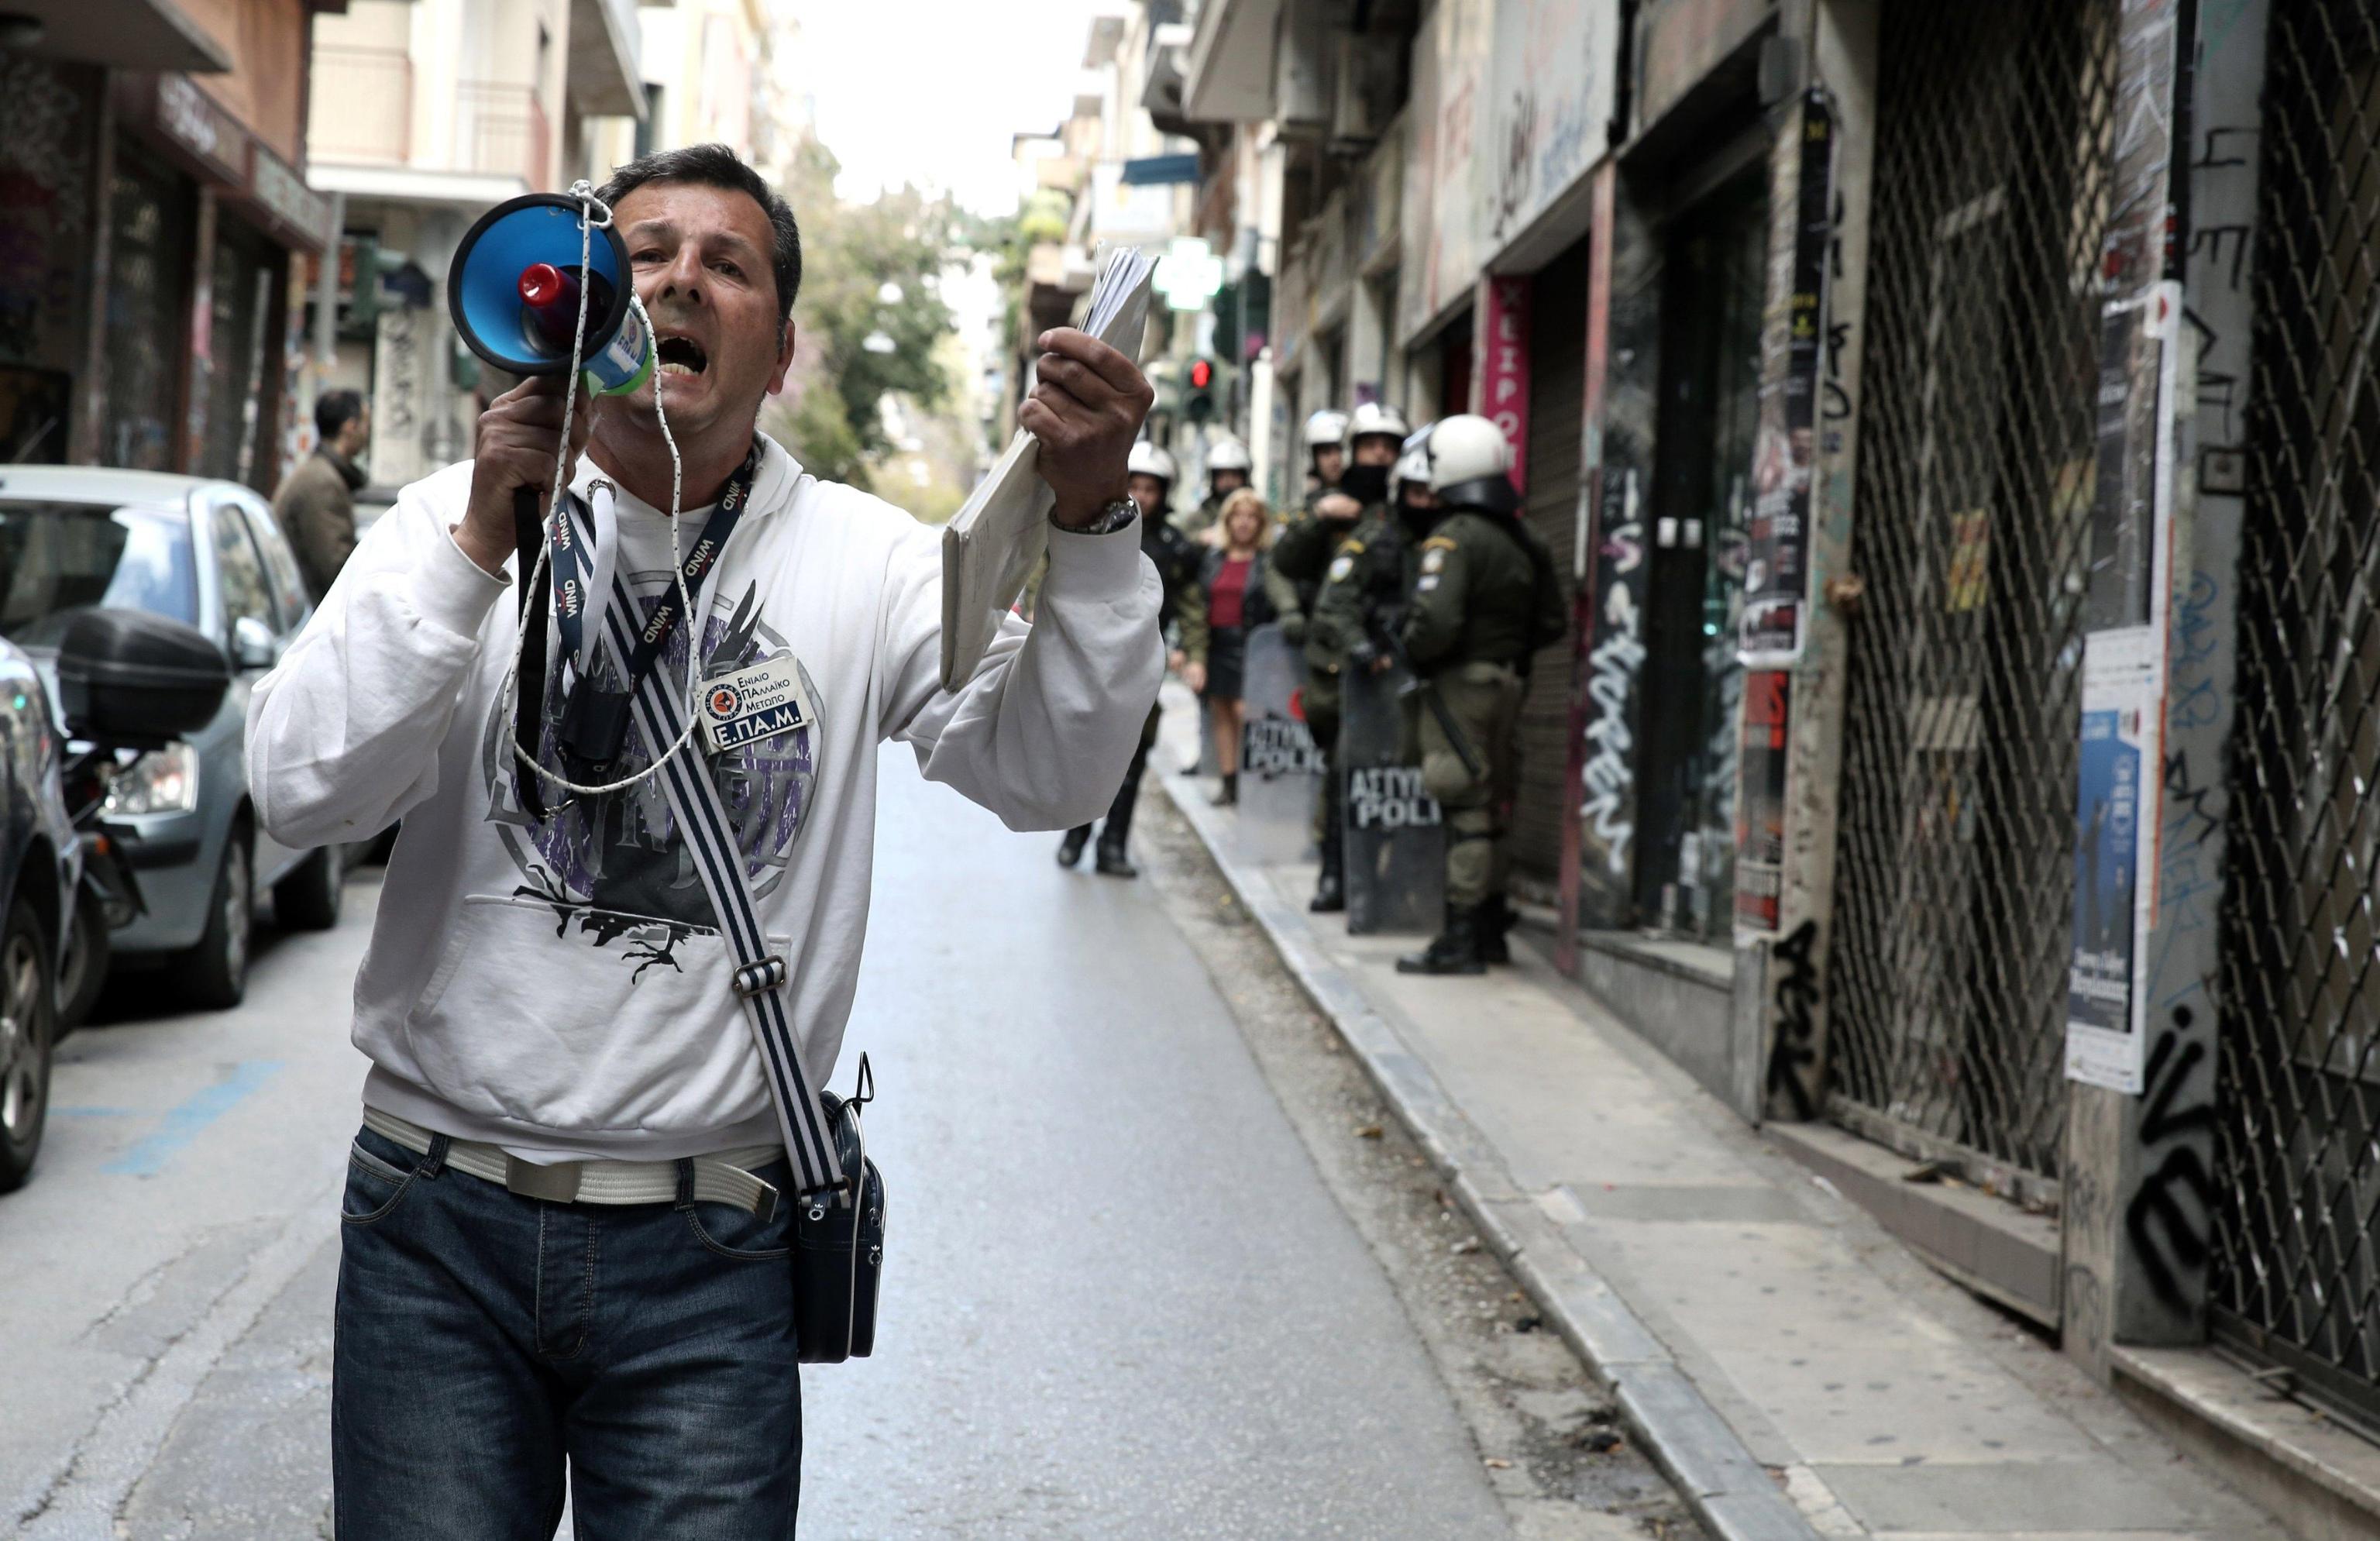 Un contestatore urla slogan contro le aste elettroniche